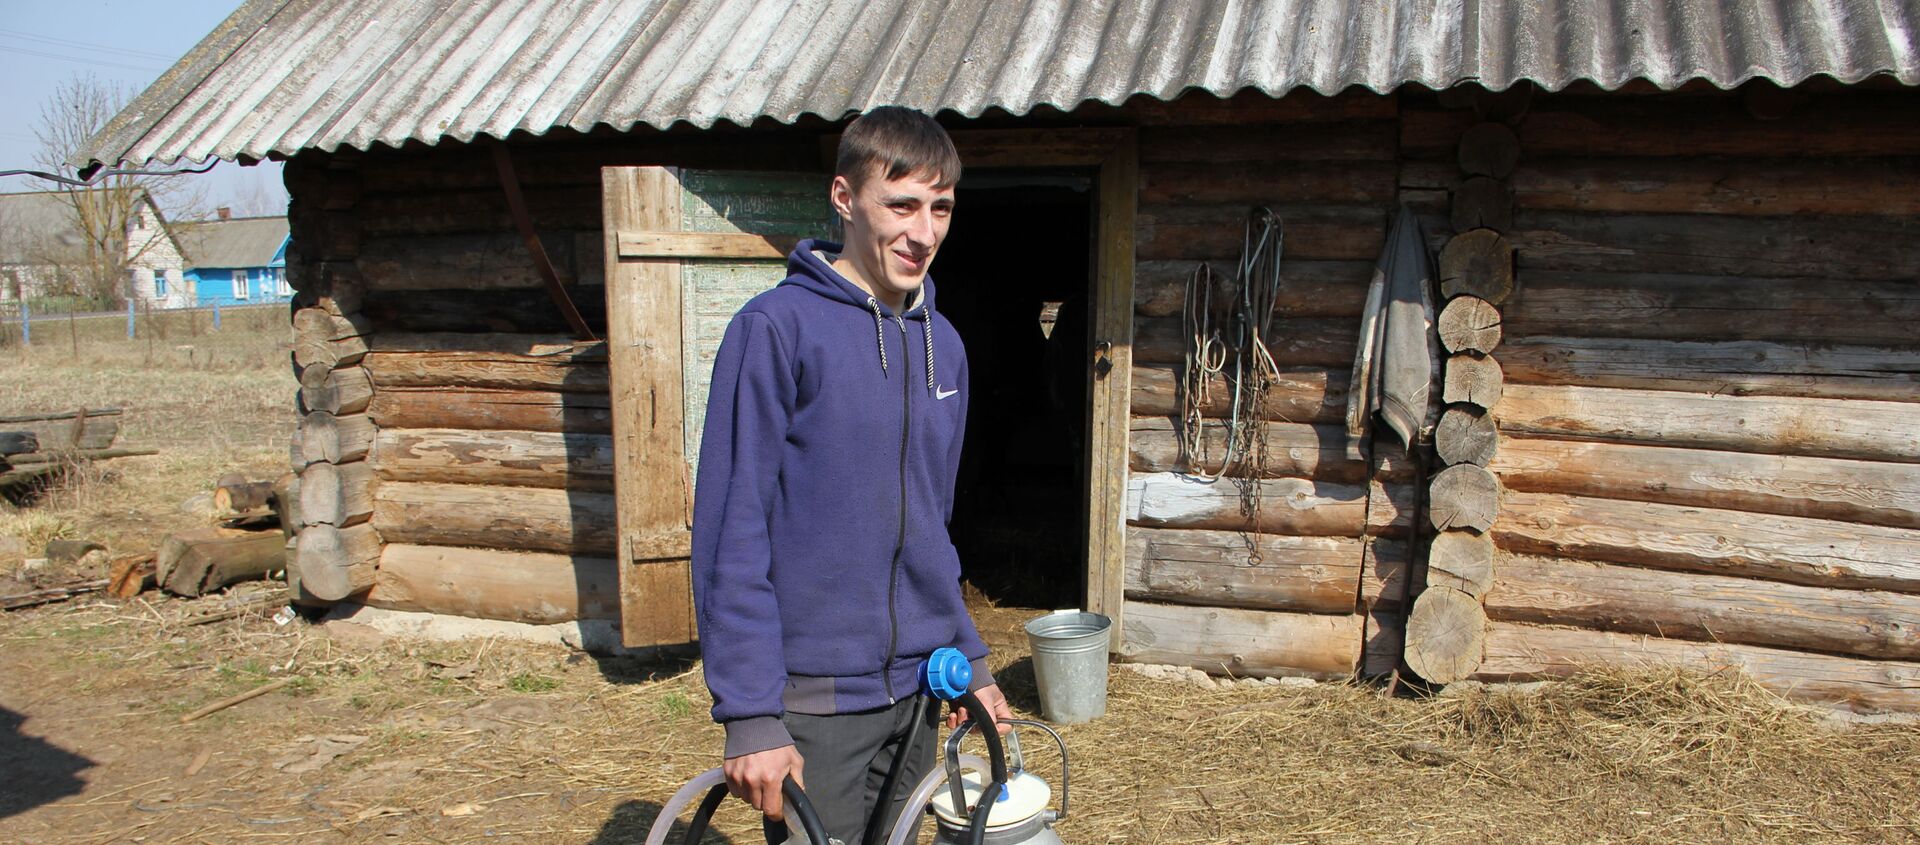 Денис работает дояром на ферме и ухаживает за 6 своими коровами - Sputnik Беларусь, 1920, 10.04.2019